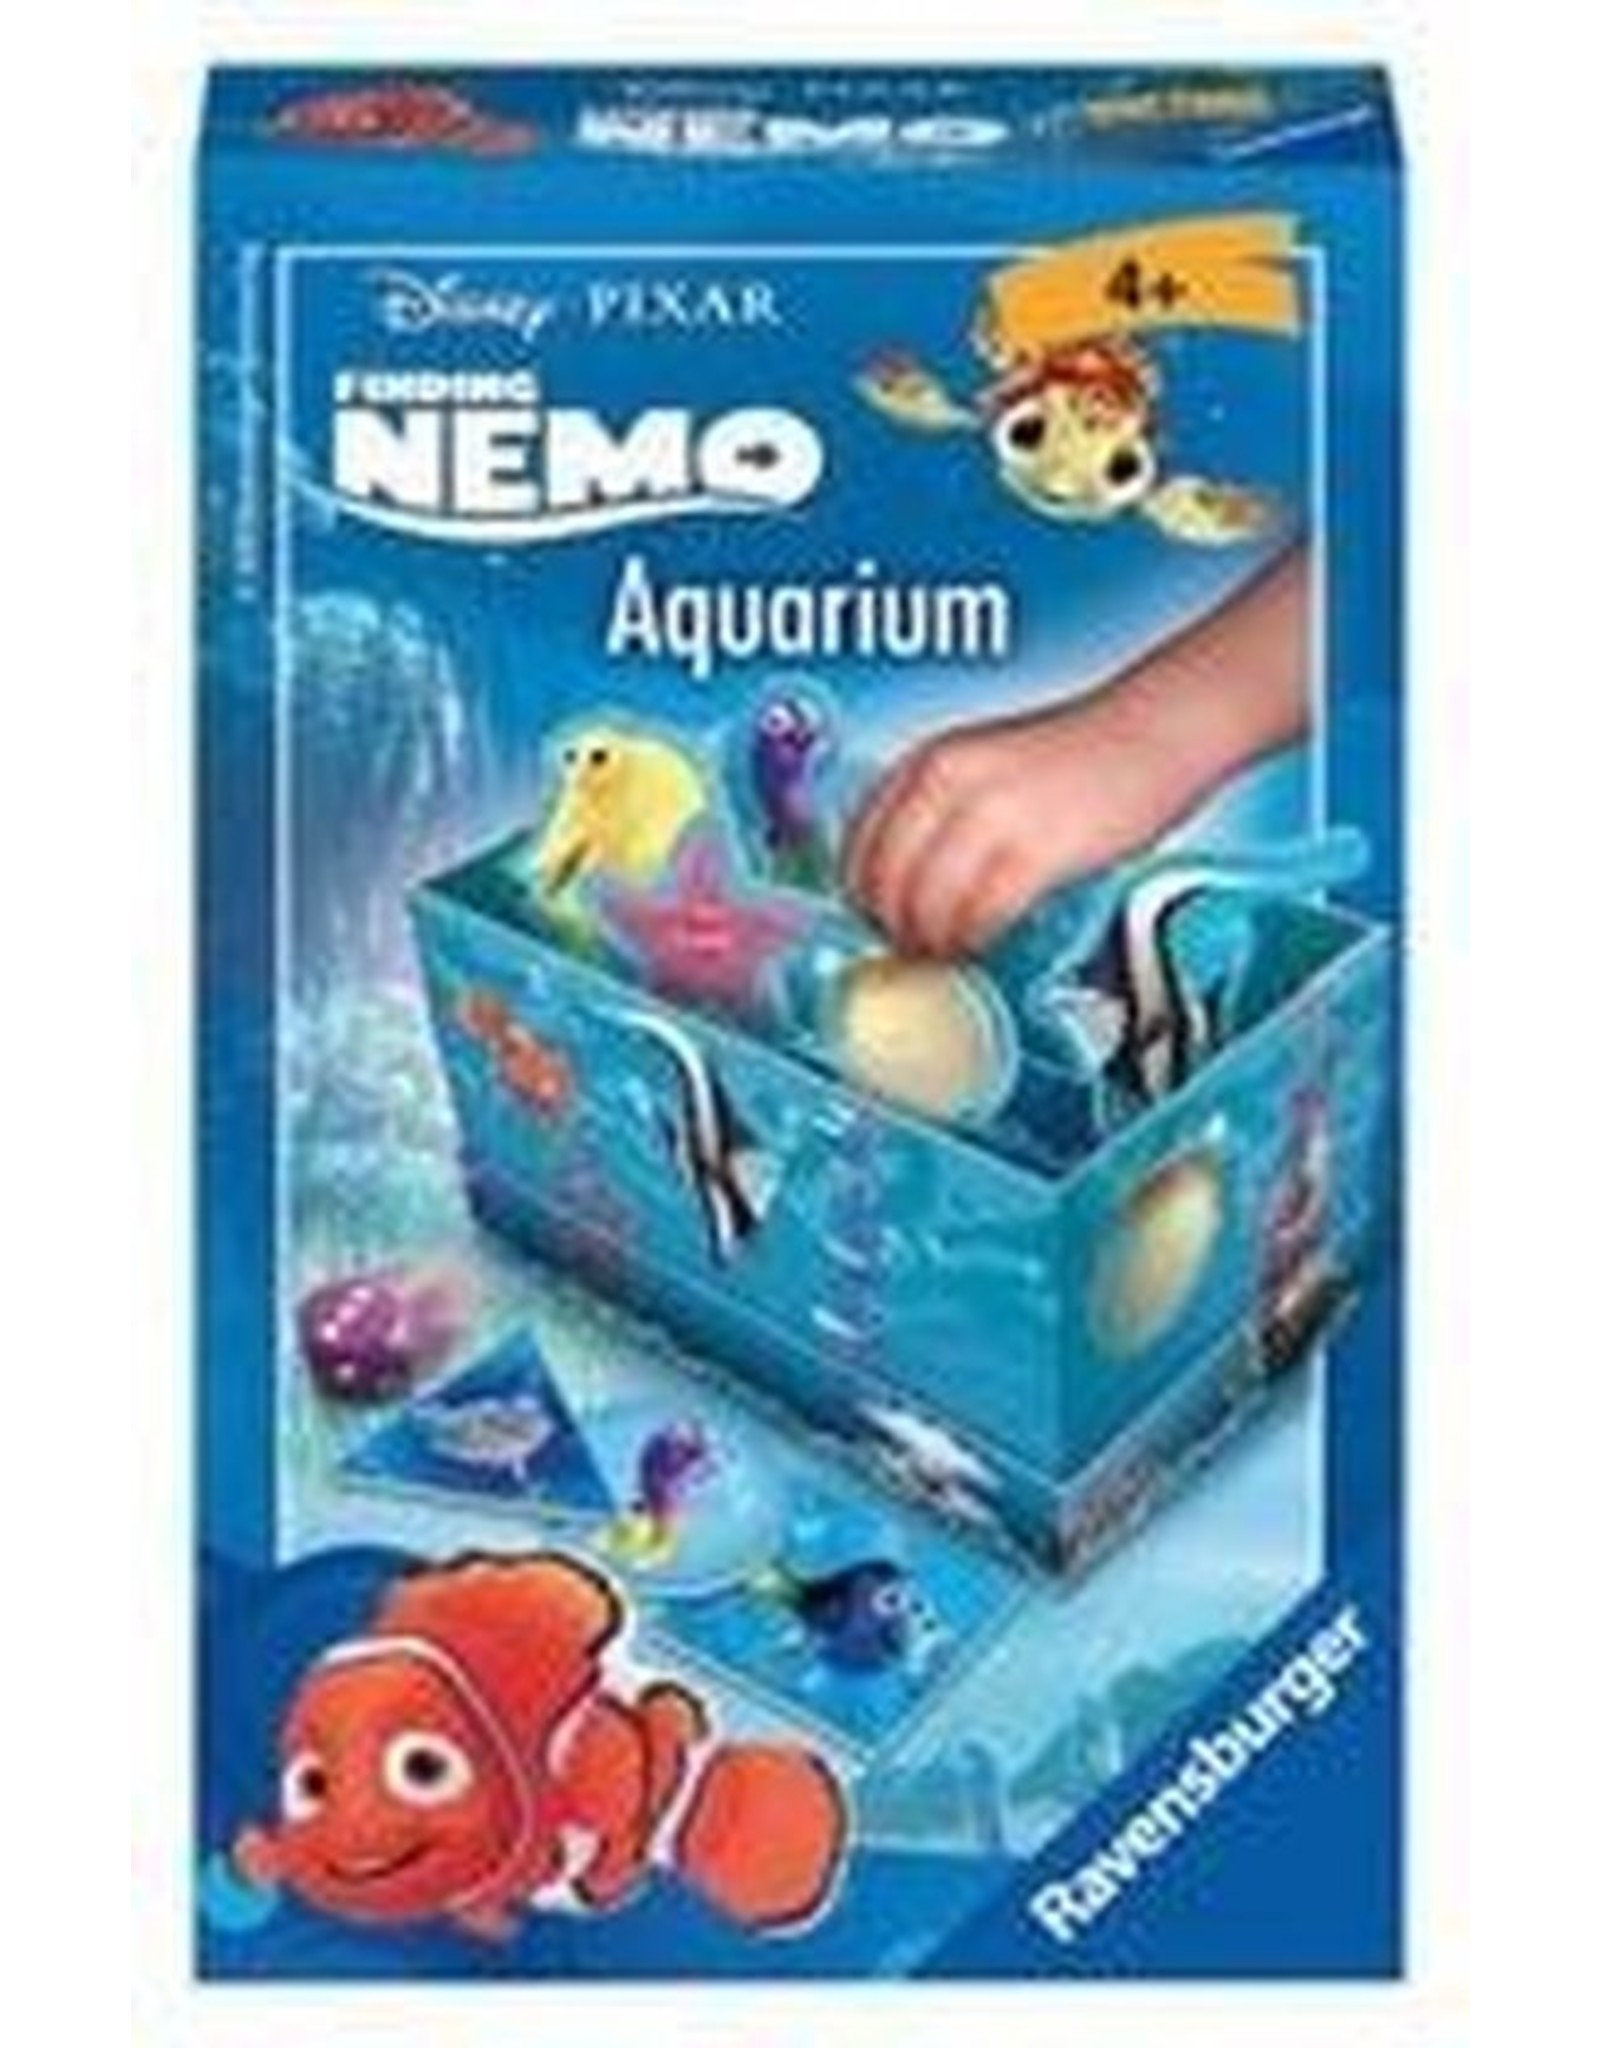 Hesje woonadres straal Nemo Aquarium - Marja's Shop